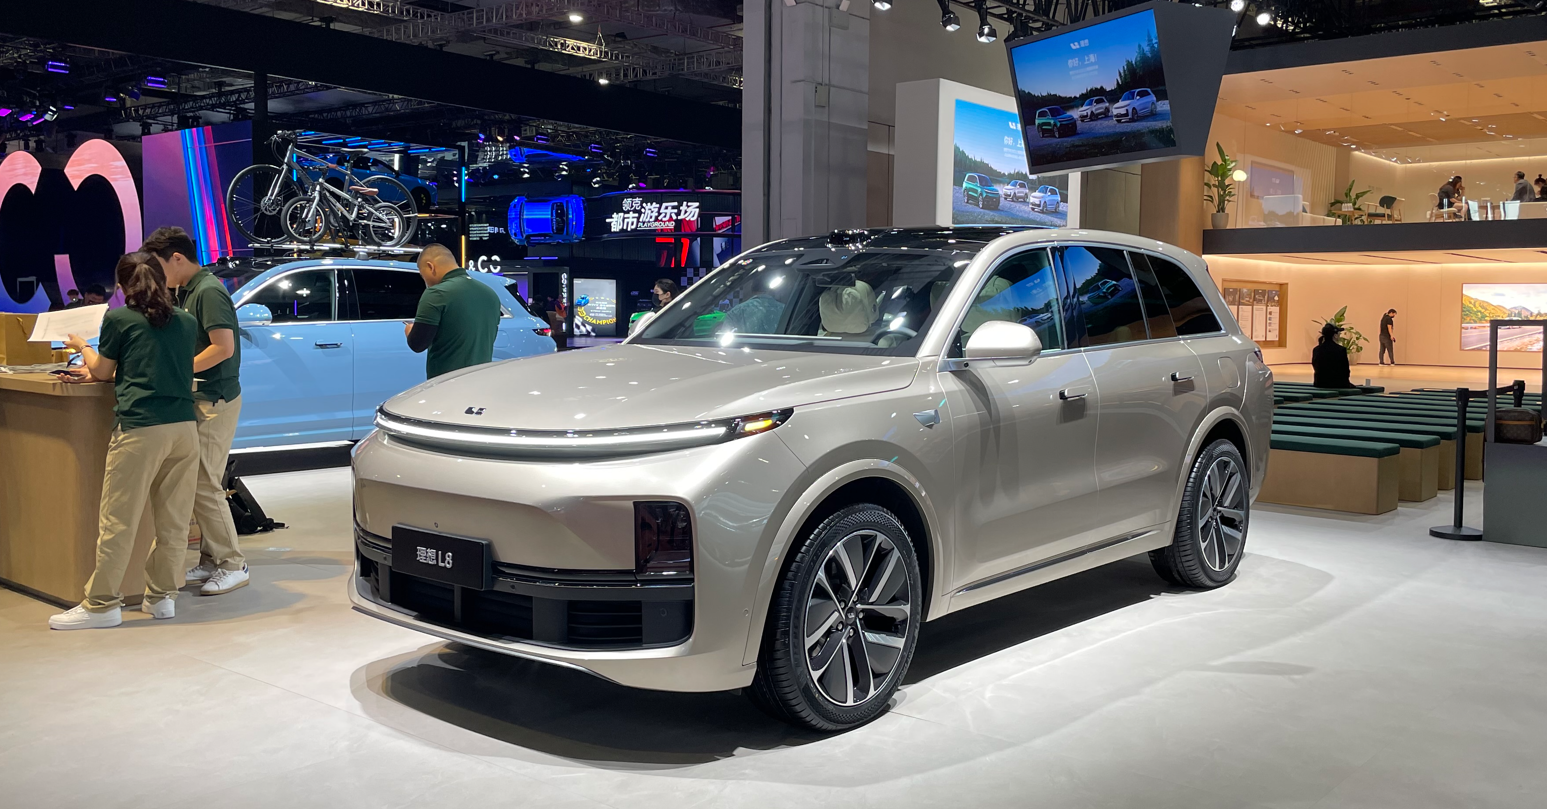 Li Auto Plans to Enter the Autonomous Truck Market, Sources Say - Car News - 1